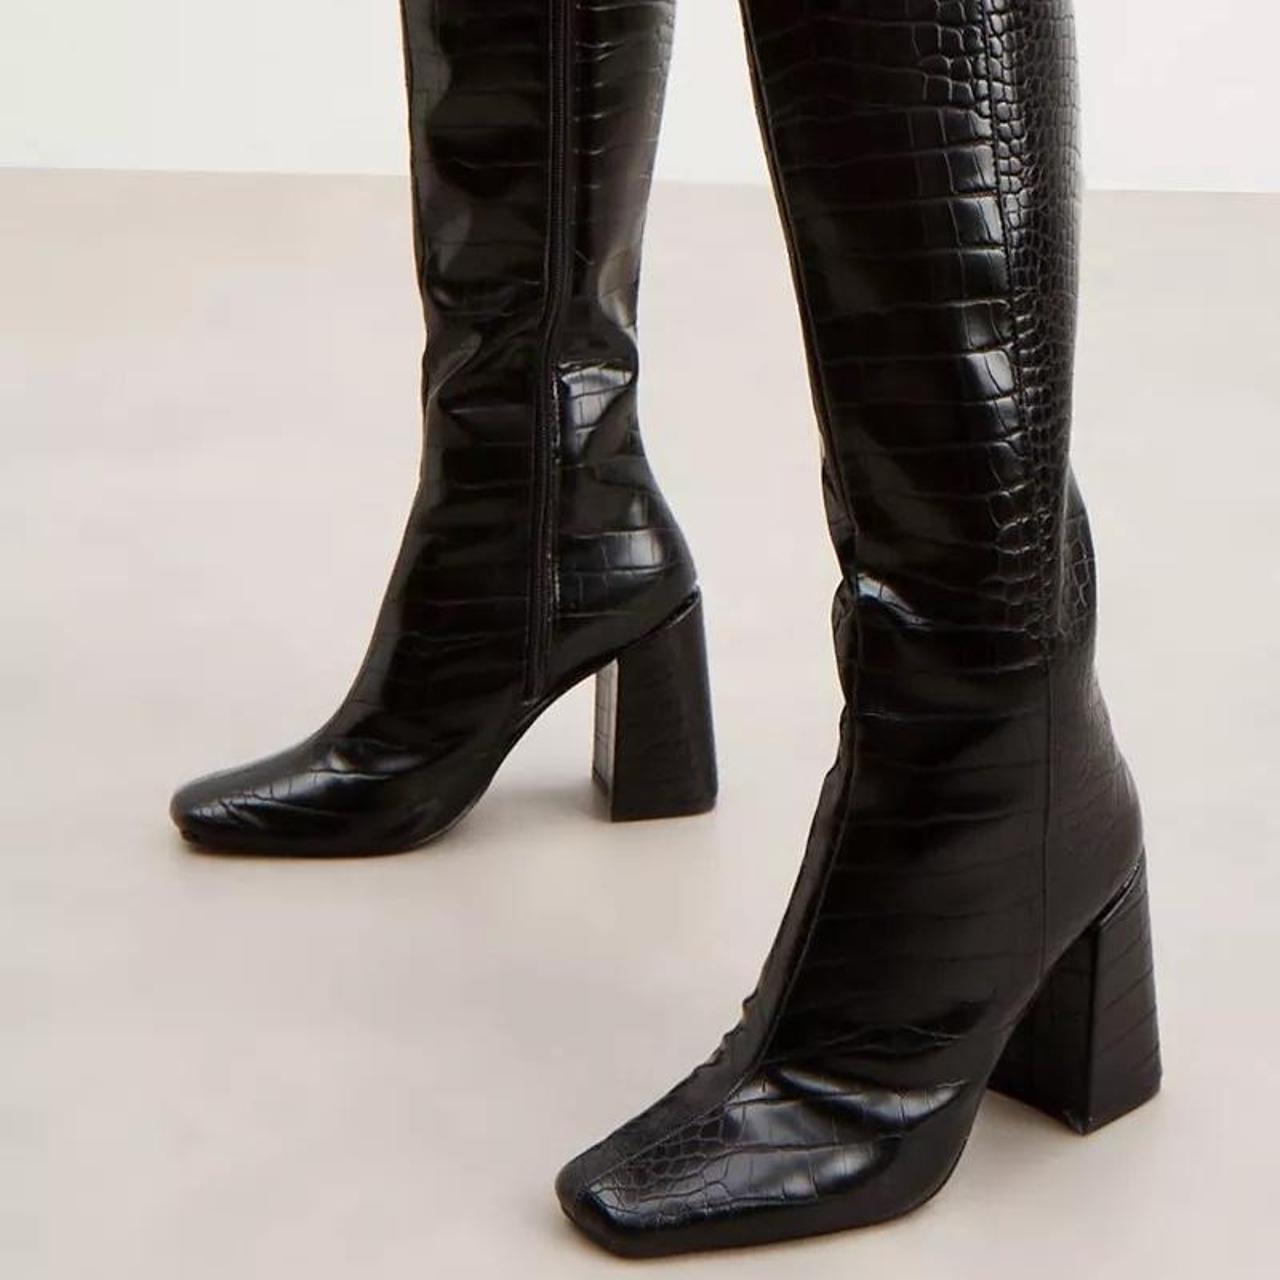 Debenhams Women's Black Boots | Depop